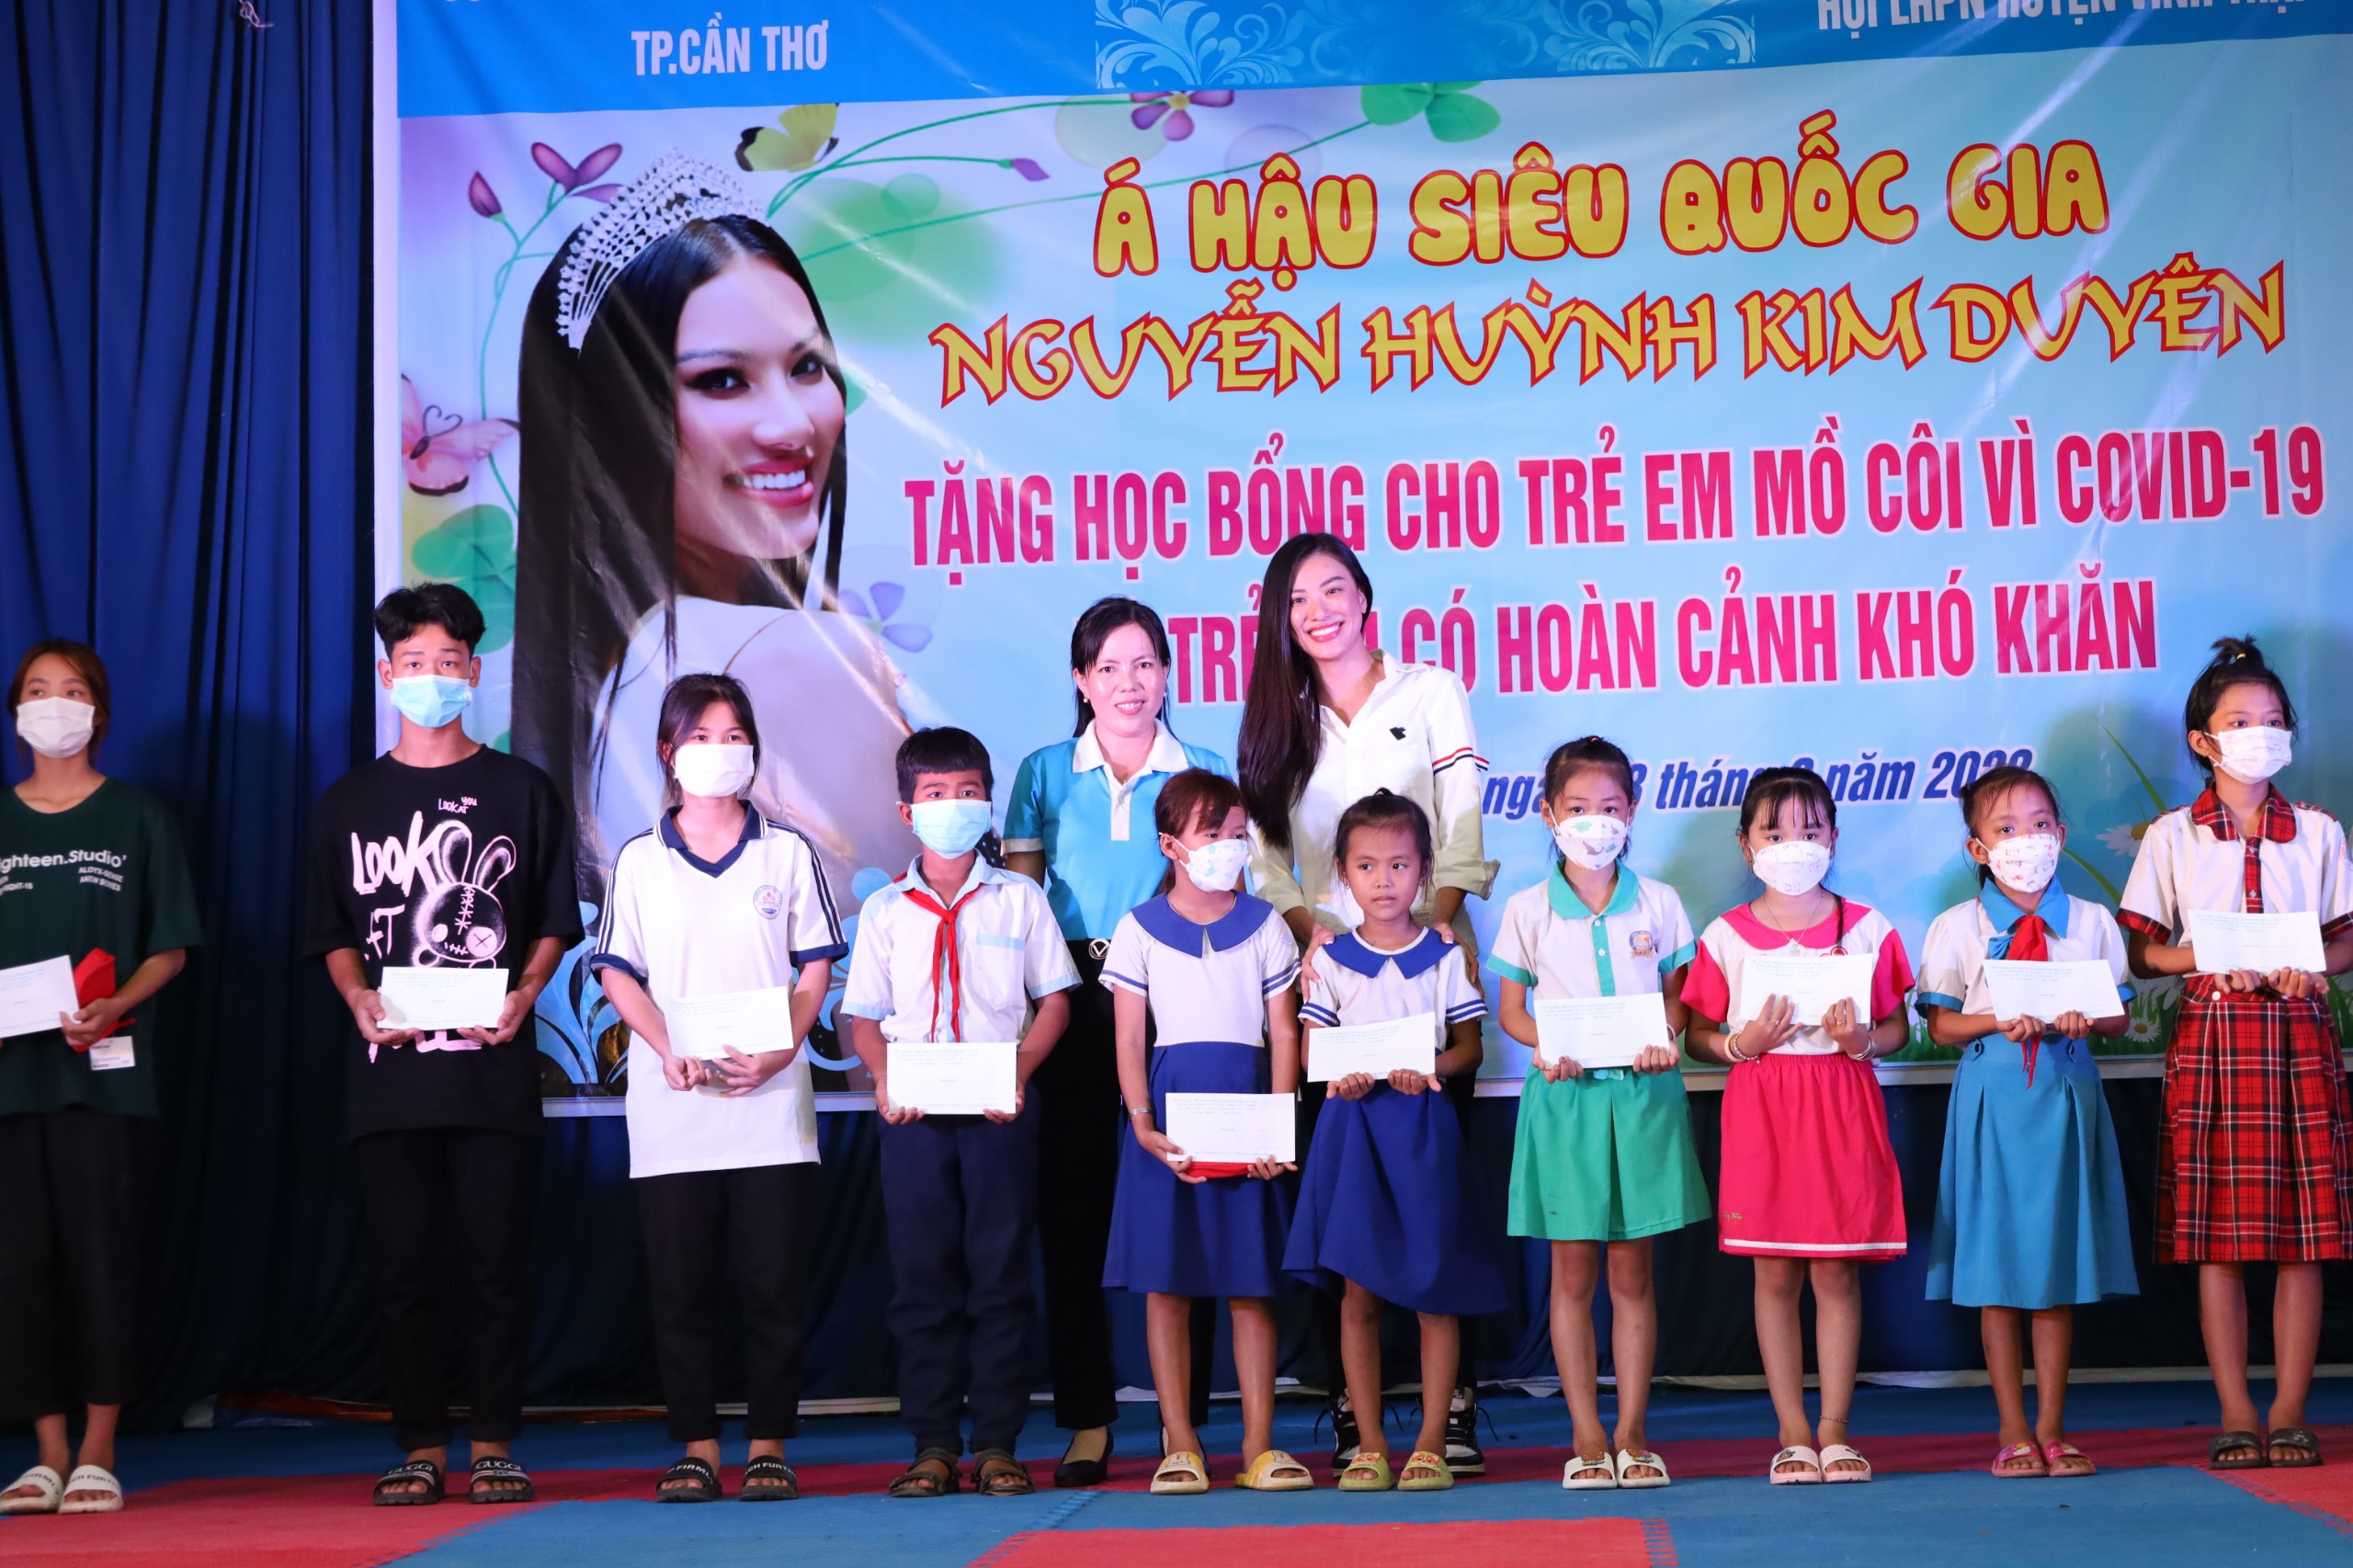 Á hậu siêu quốc gia Nguyễn Huỳnh Kim Duyên và bà Trần Thị Nguyệt Quế - Chủ tịch Hội LHPN huyện Vĩnh Thạnh trao tặng học bổng cho các em học sinh.